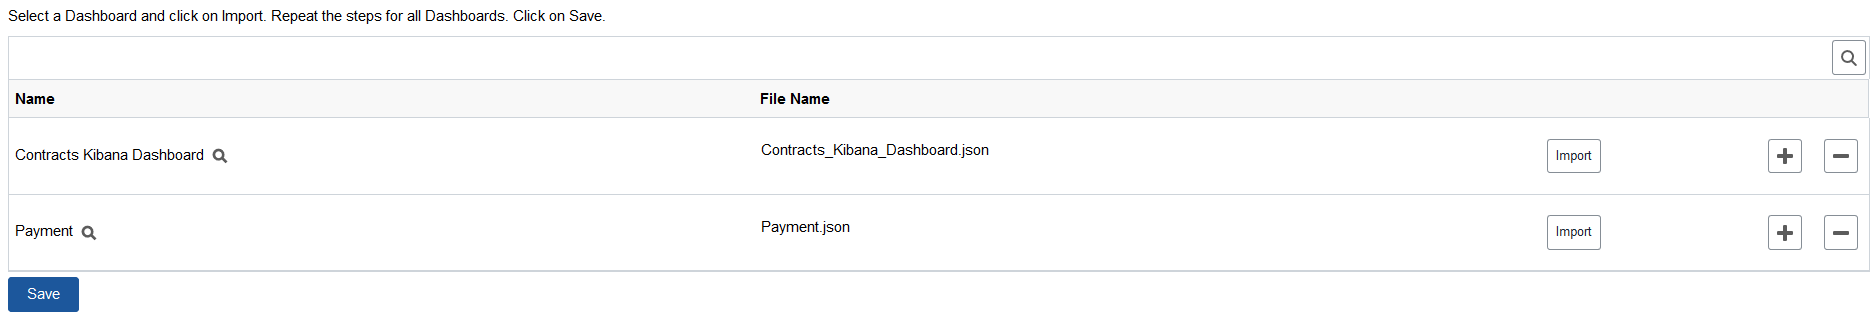 Import Kibana Dashboard page